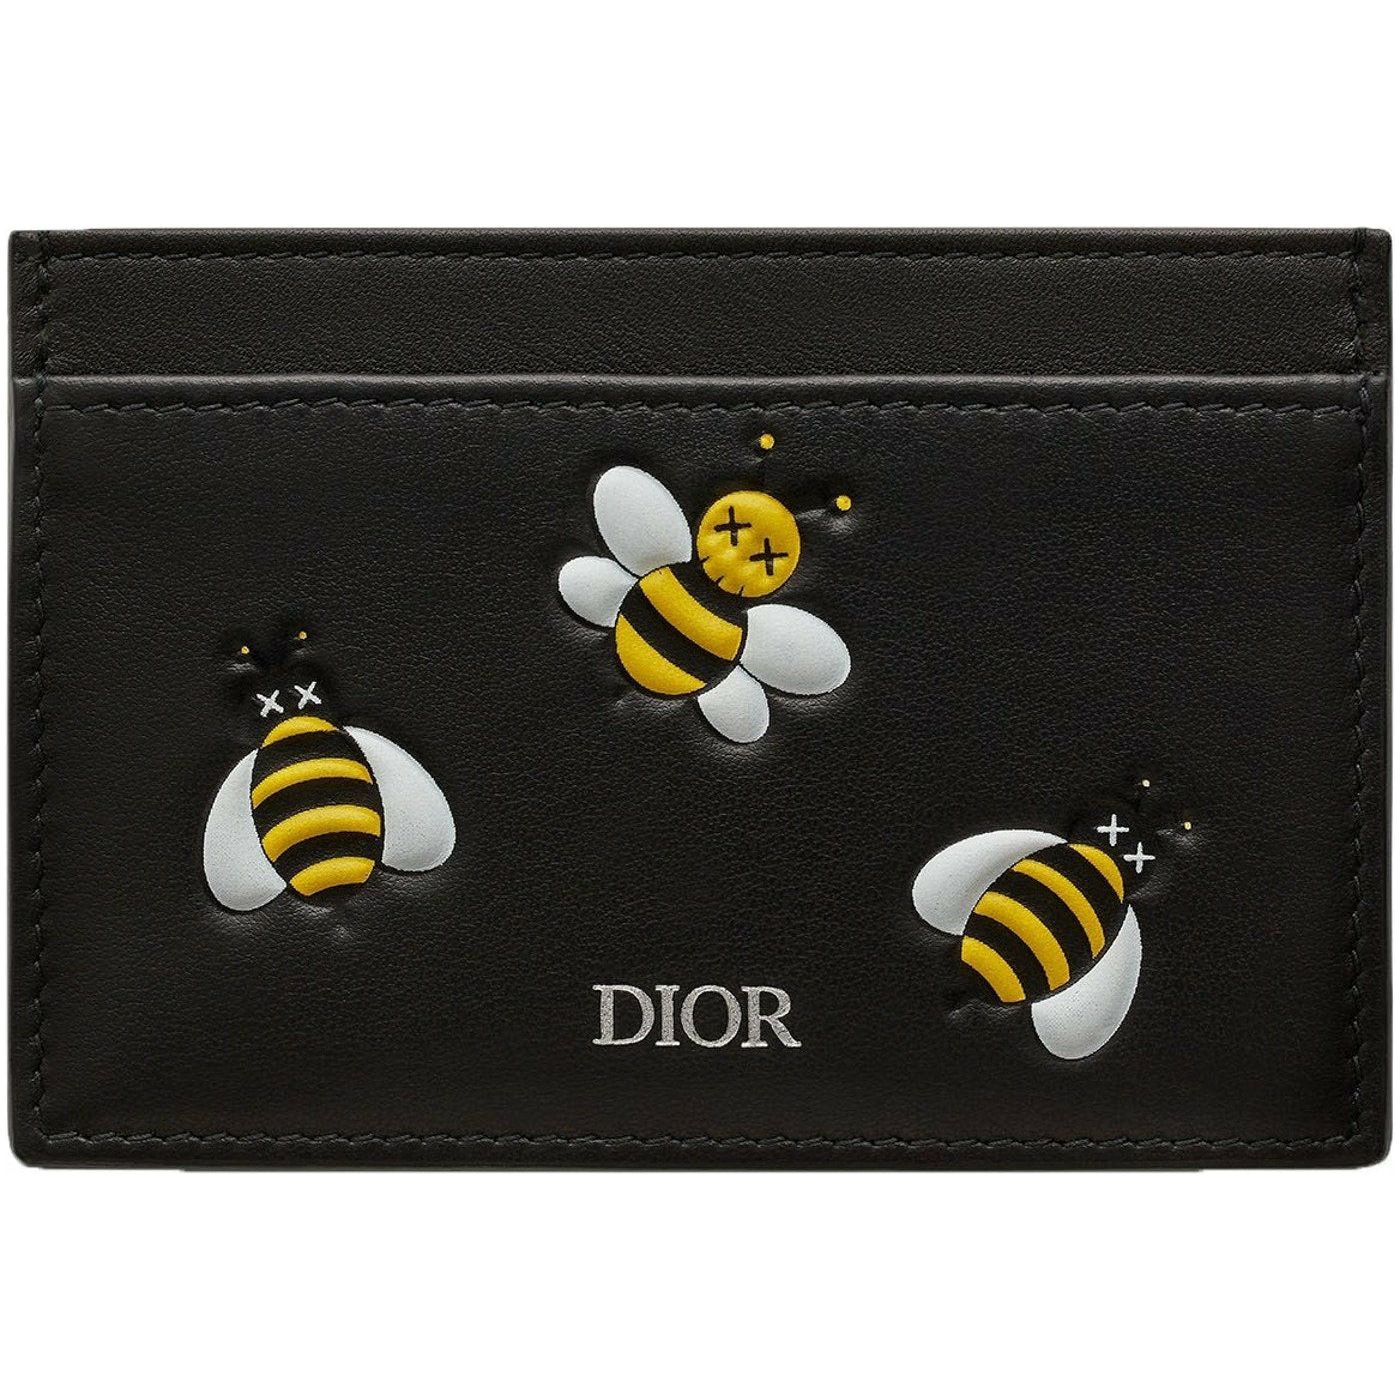 Dior x Kaws Card Holder Yellow Bees Black from Kaws